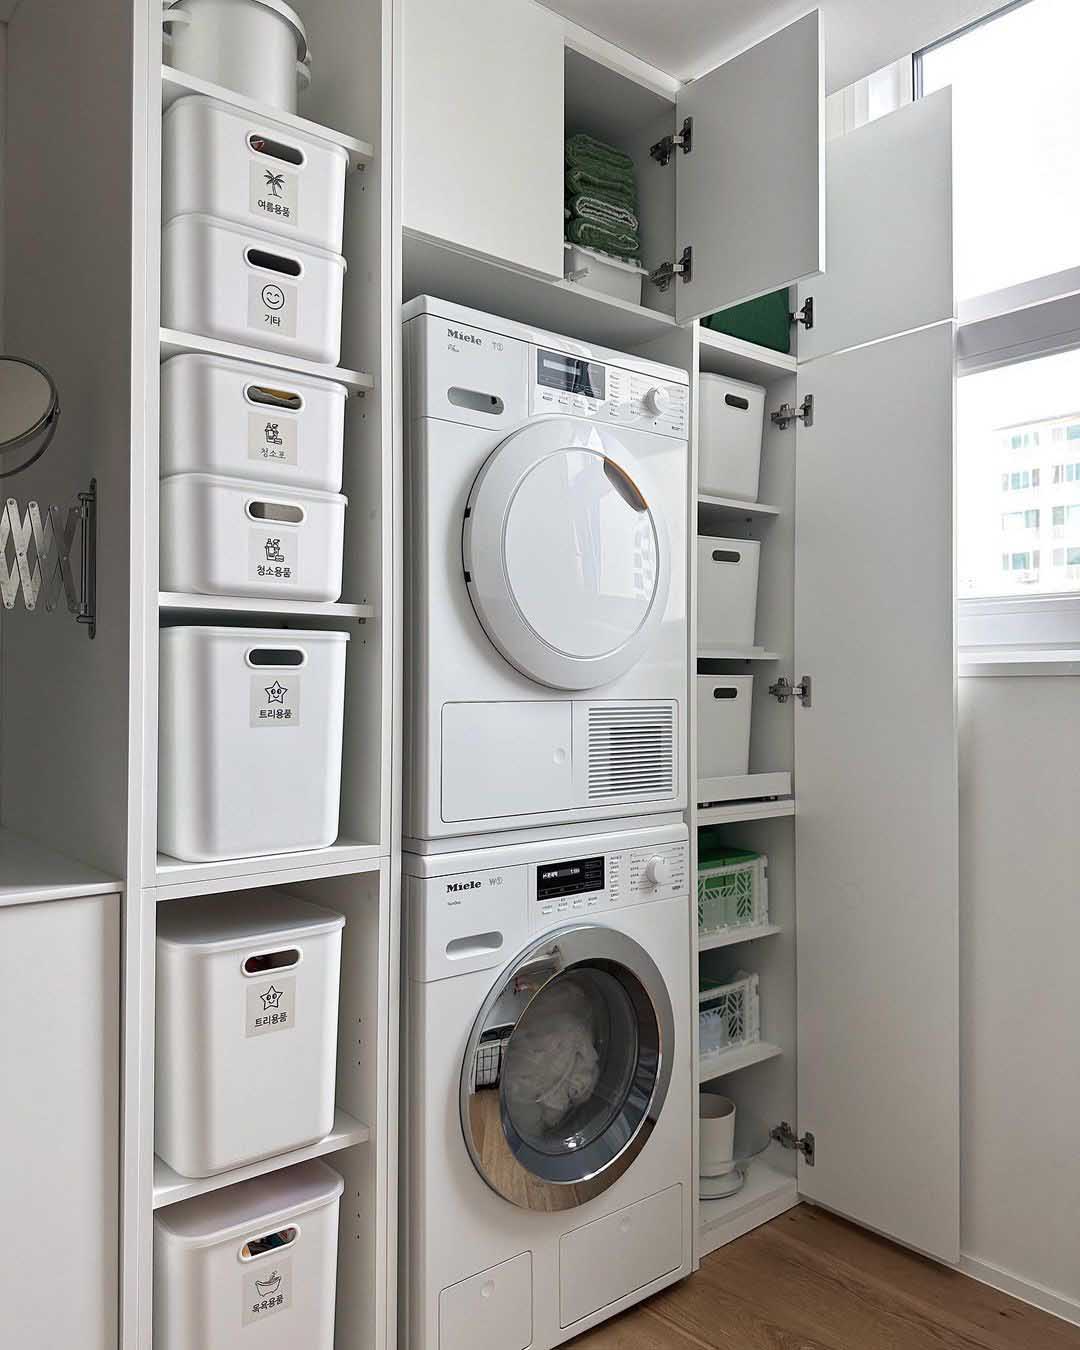 Phòng giặt 3㎡ được mẹ đảm ở Hàn Quốc sắp xếp lại vô cùng tinh tế - Ảnh 10.